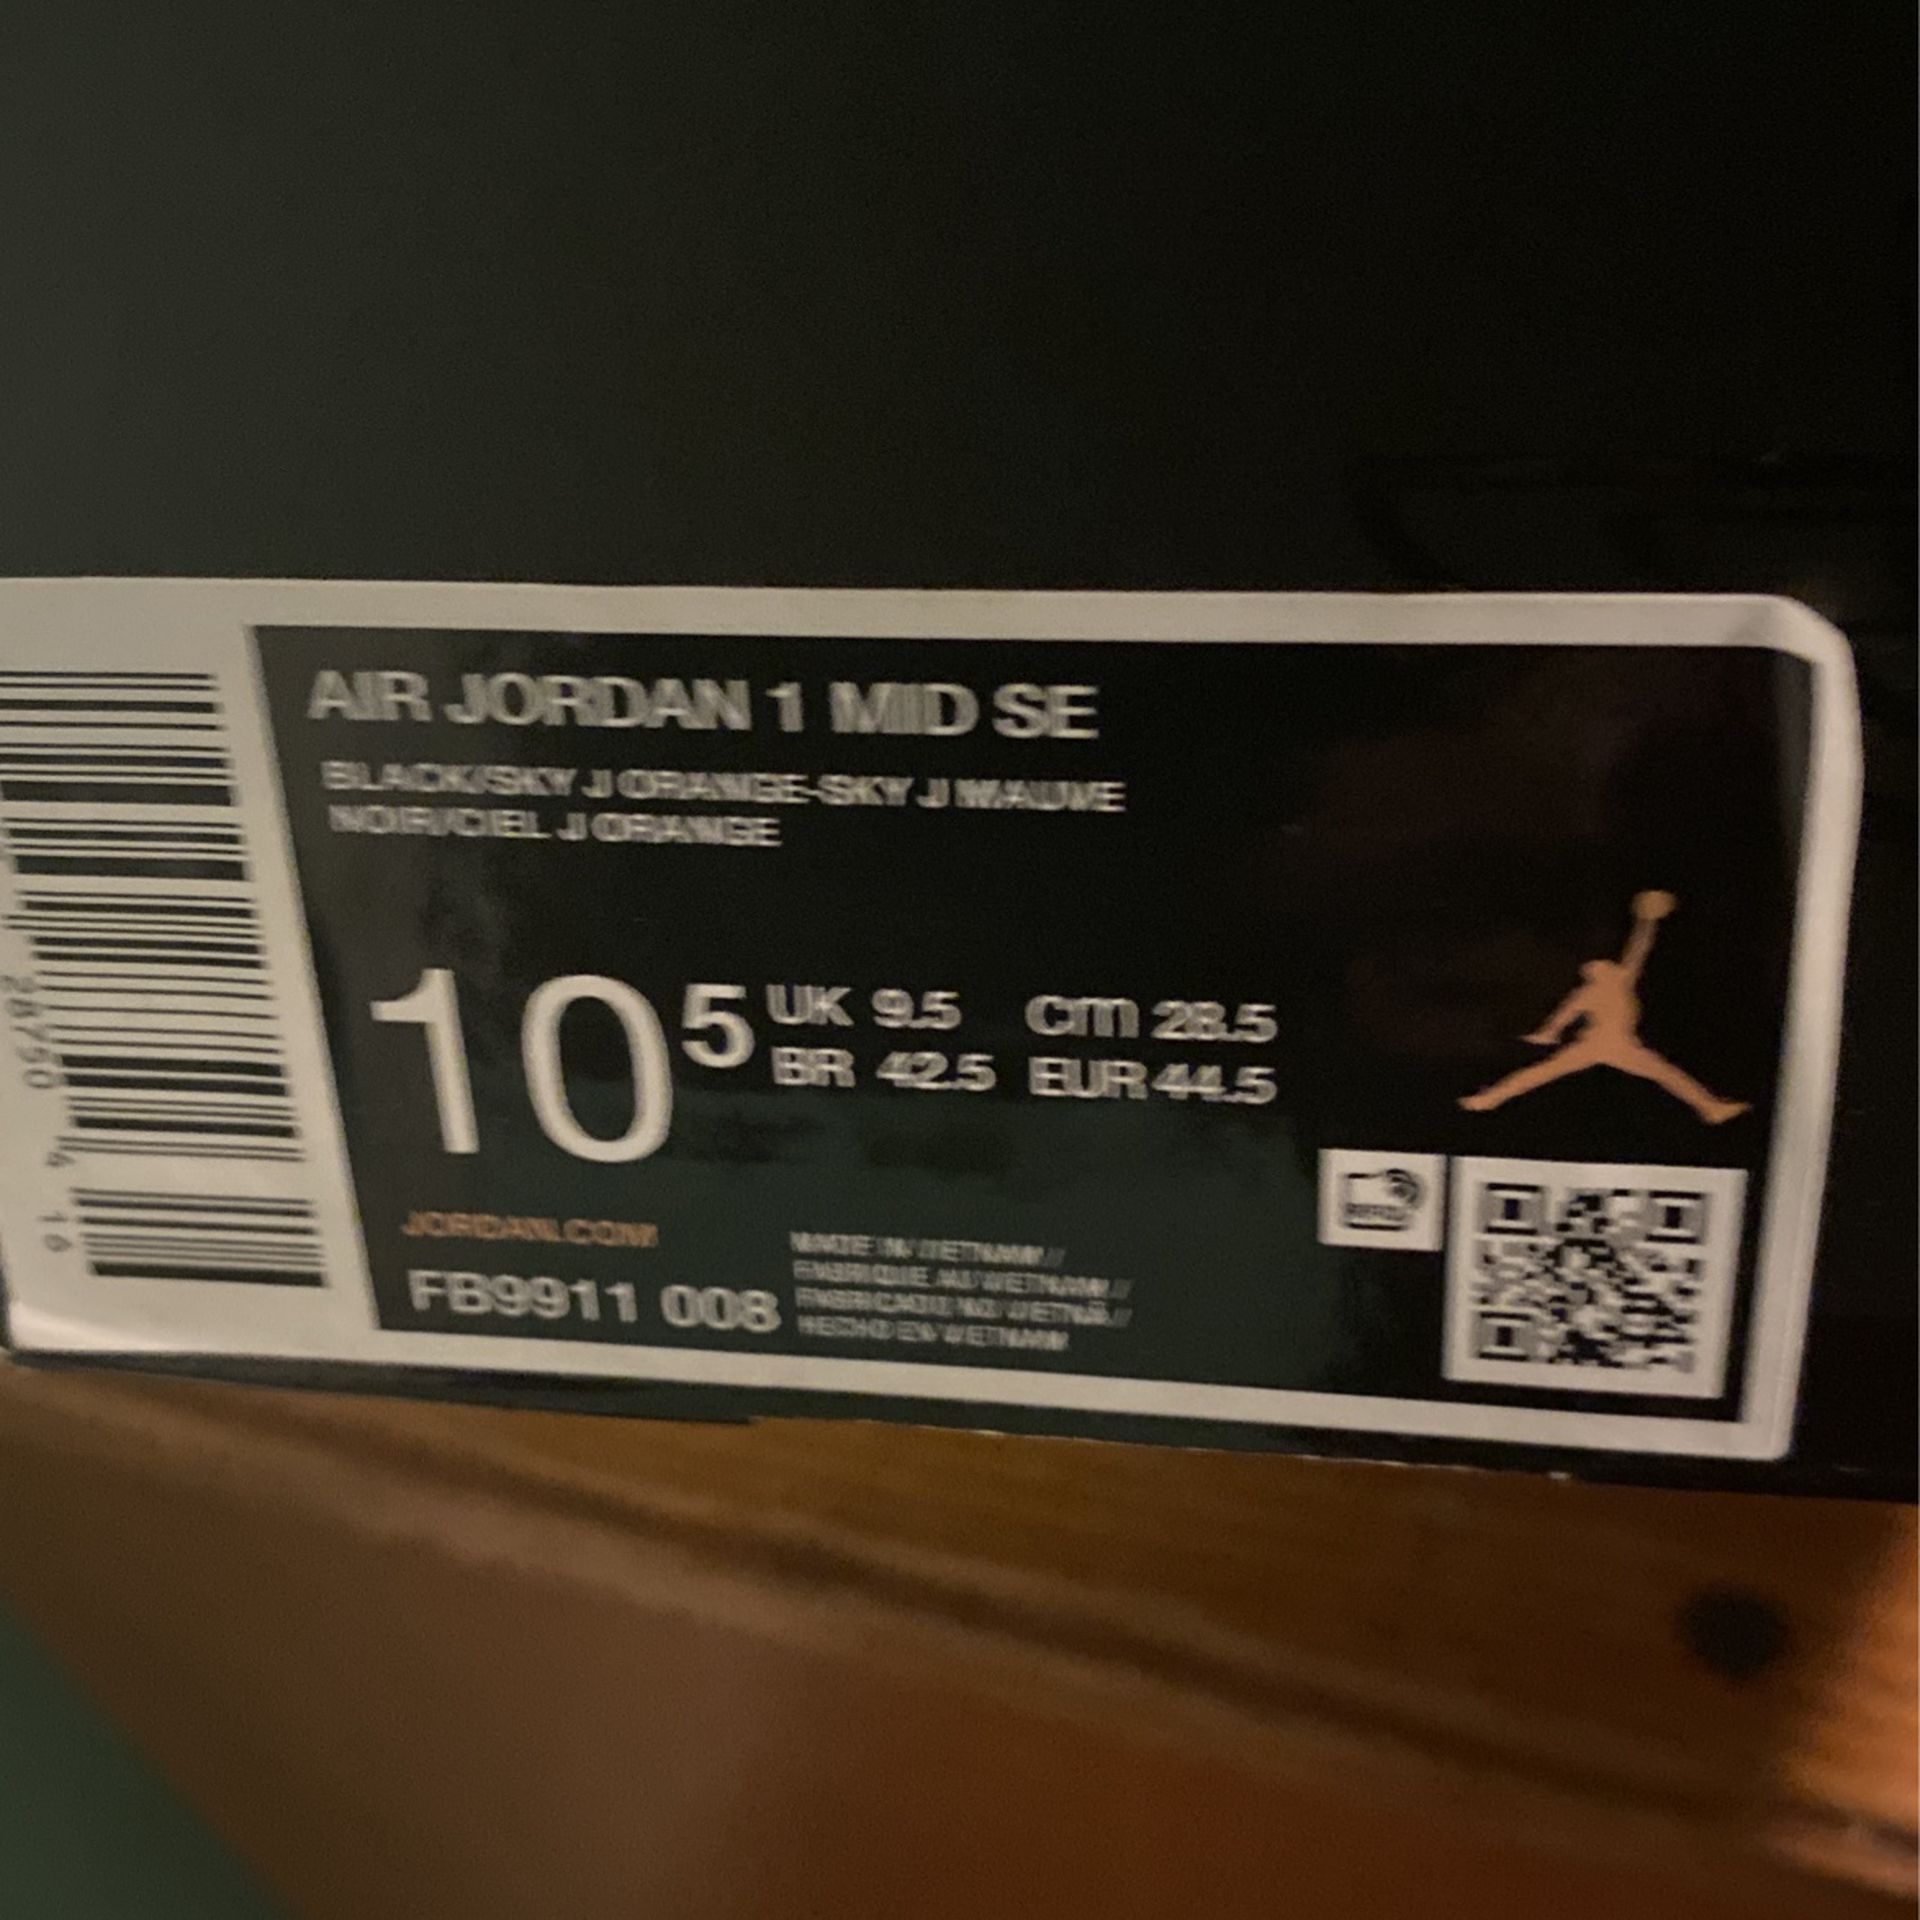 Jordan 1 Mid